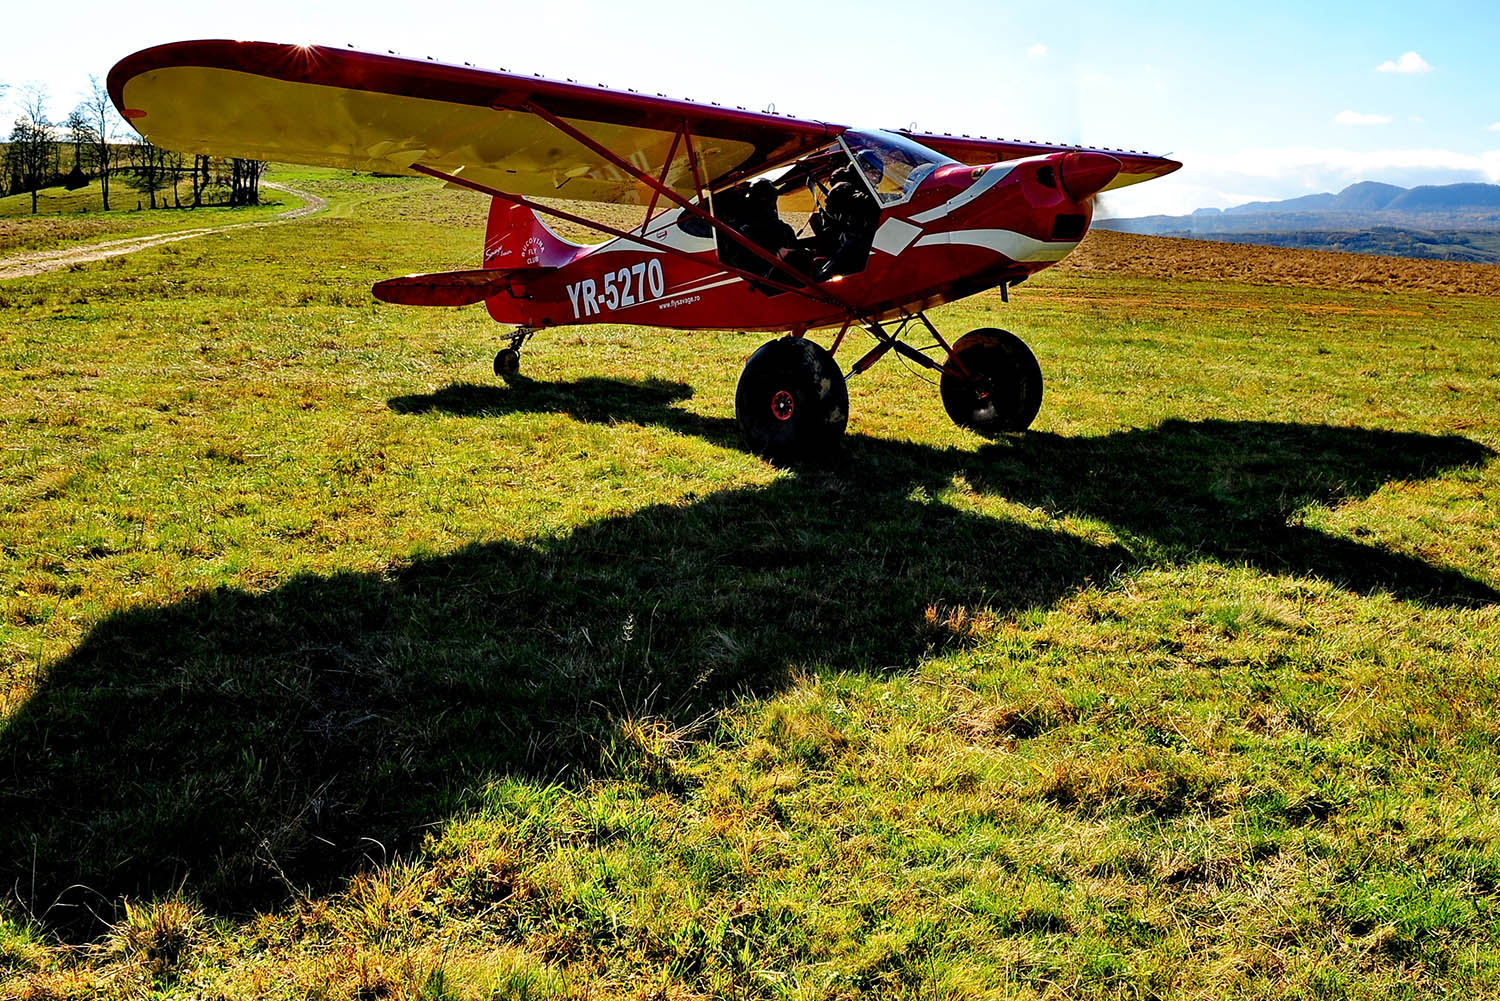 Zboruri de fotografiere in Maramures, cu avion ultrausor